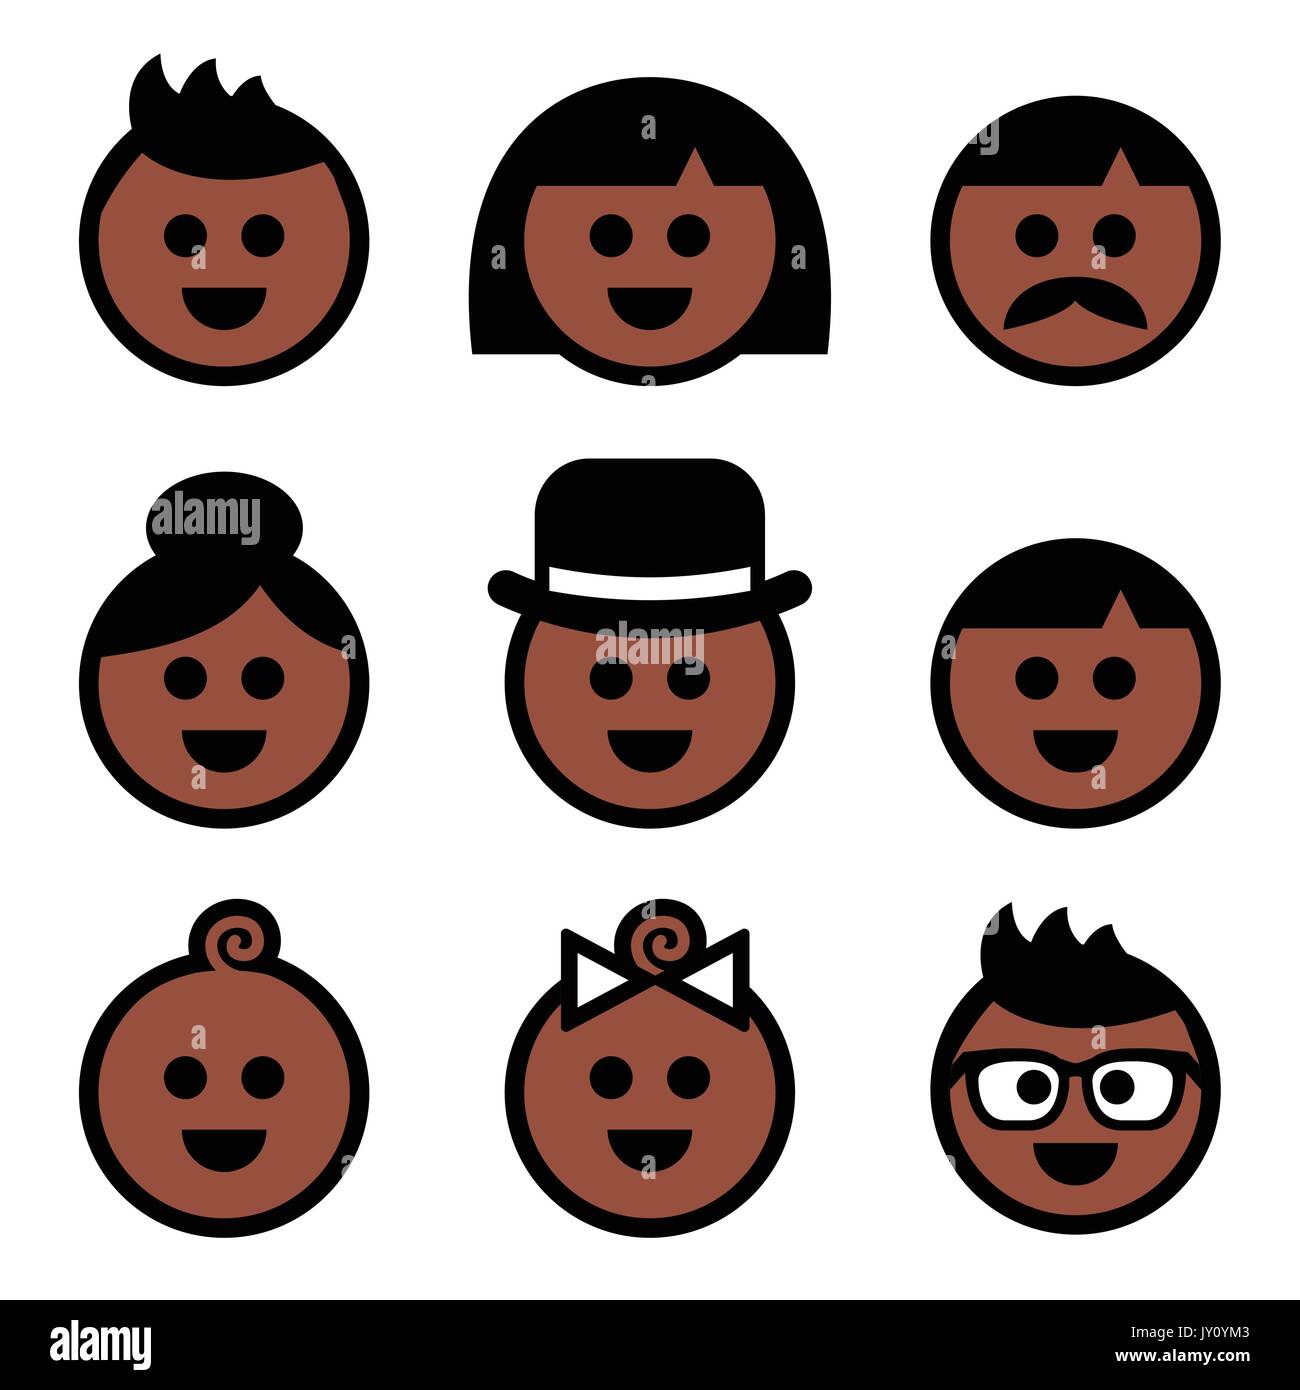 Umano, marrone scuro colore di pelle set di icone vettoriali set di icone di volti di persone - carnagione scura Illustrazione Vettoriale